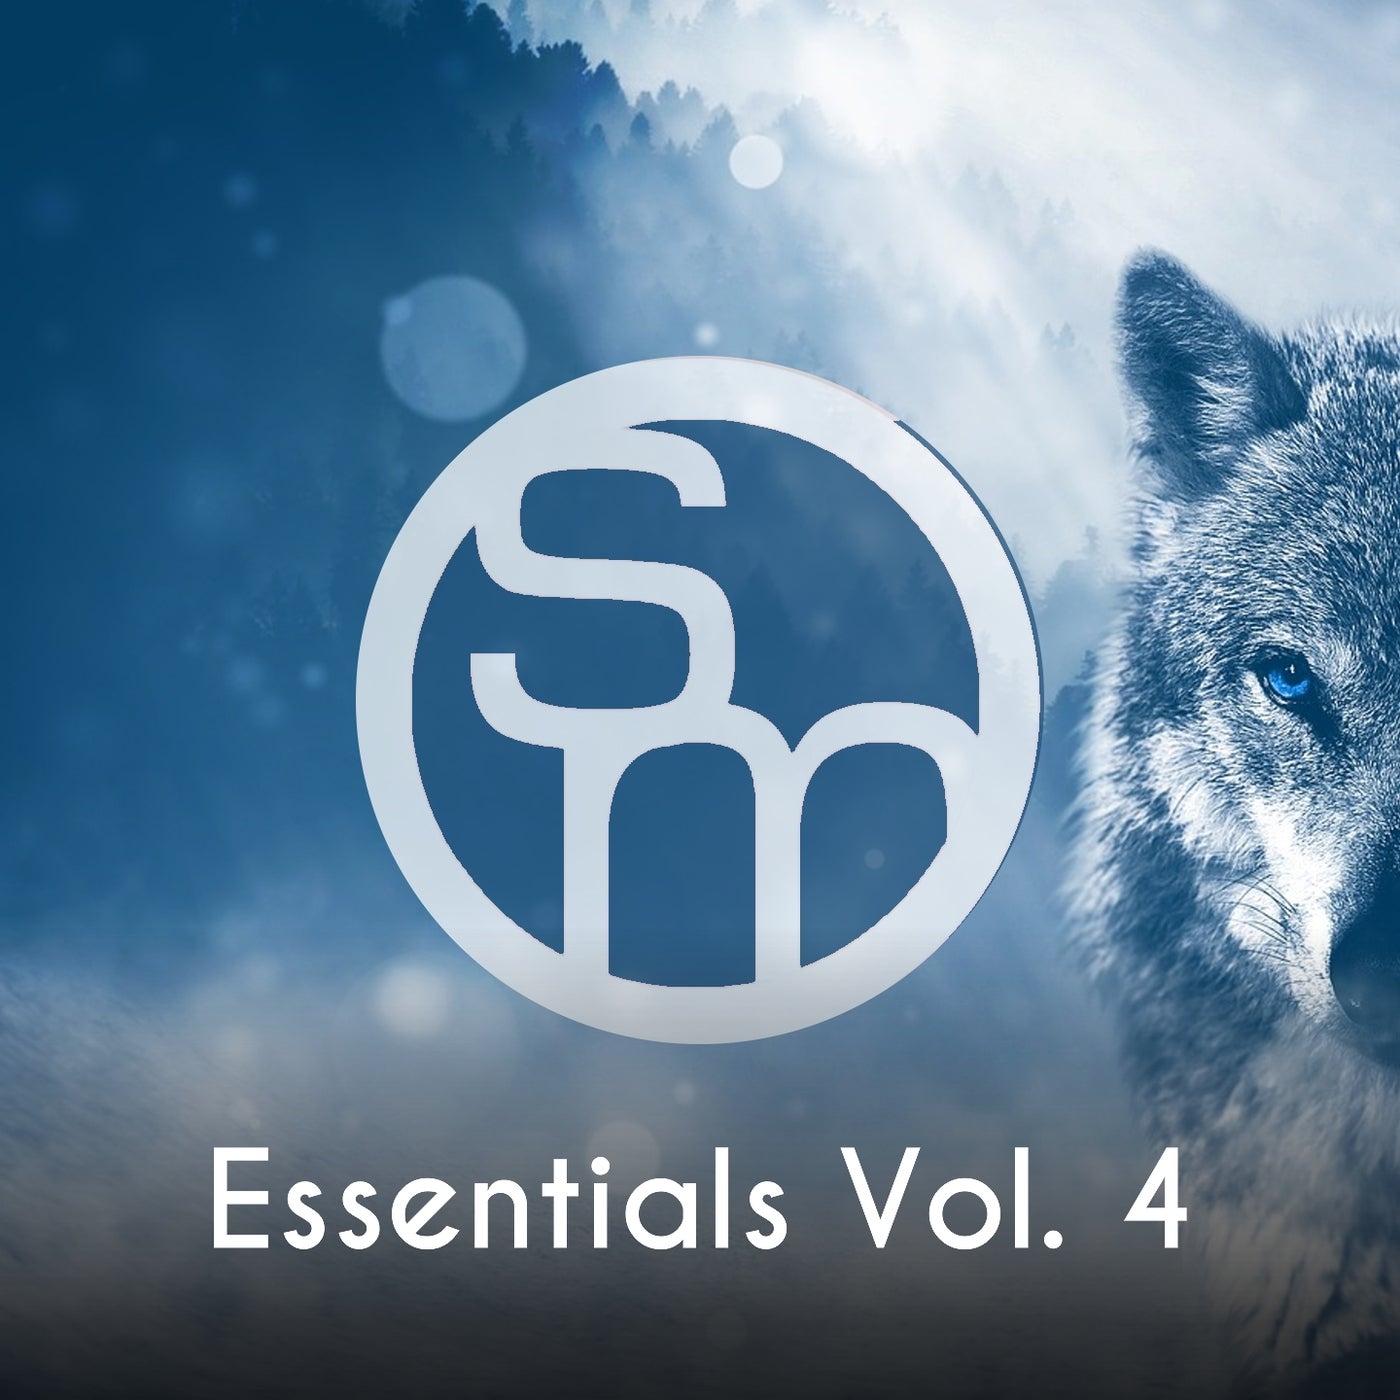 Syncmusic - Essentials, Vol. 4